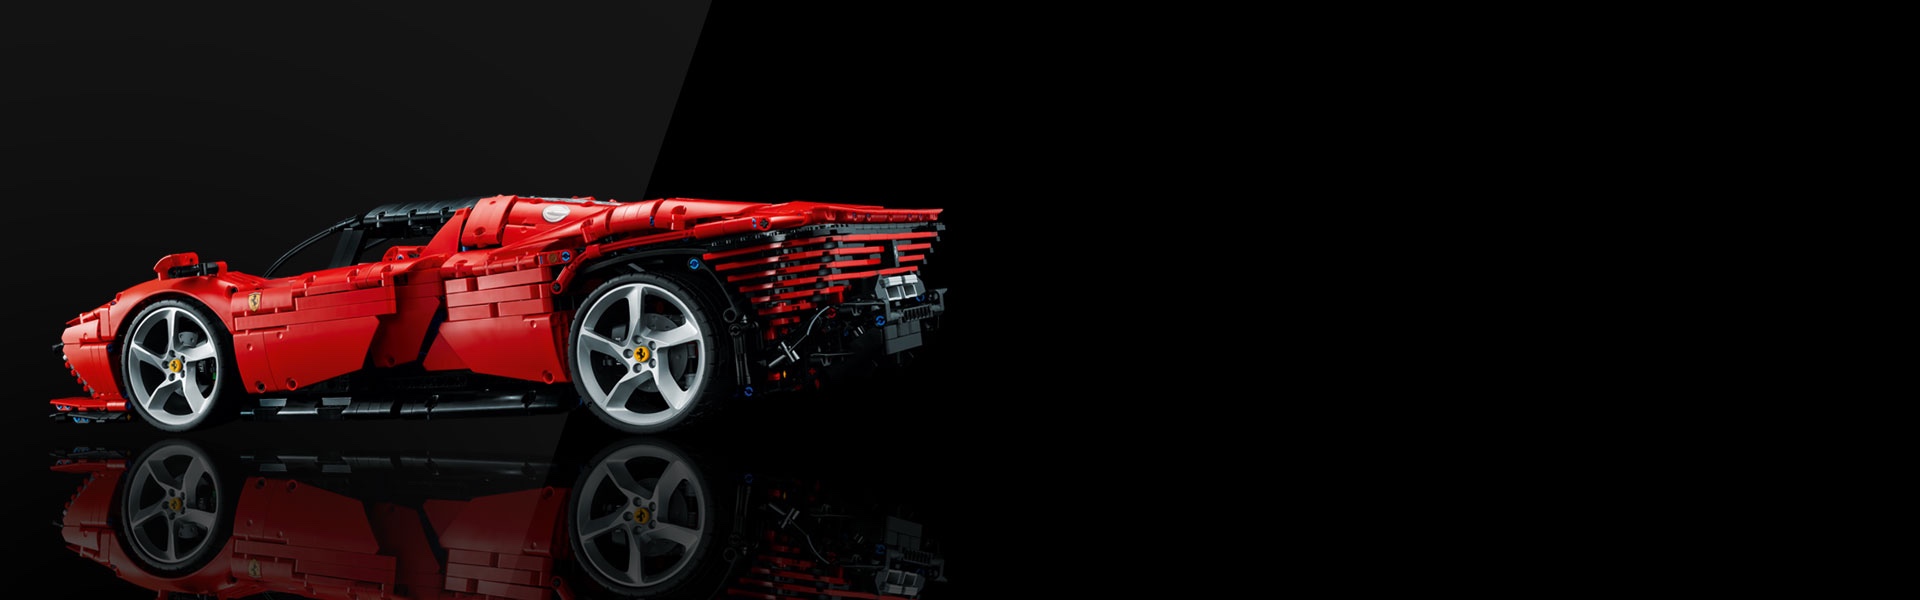 Ferrari Daytona SP3 42143 | Technic | Buy online at the Official 